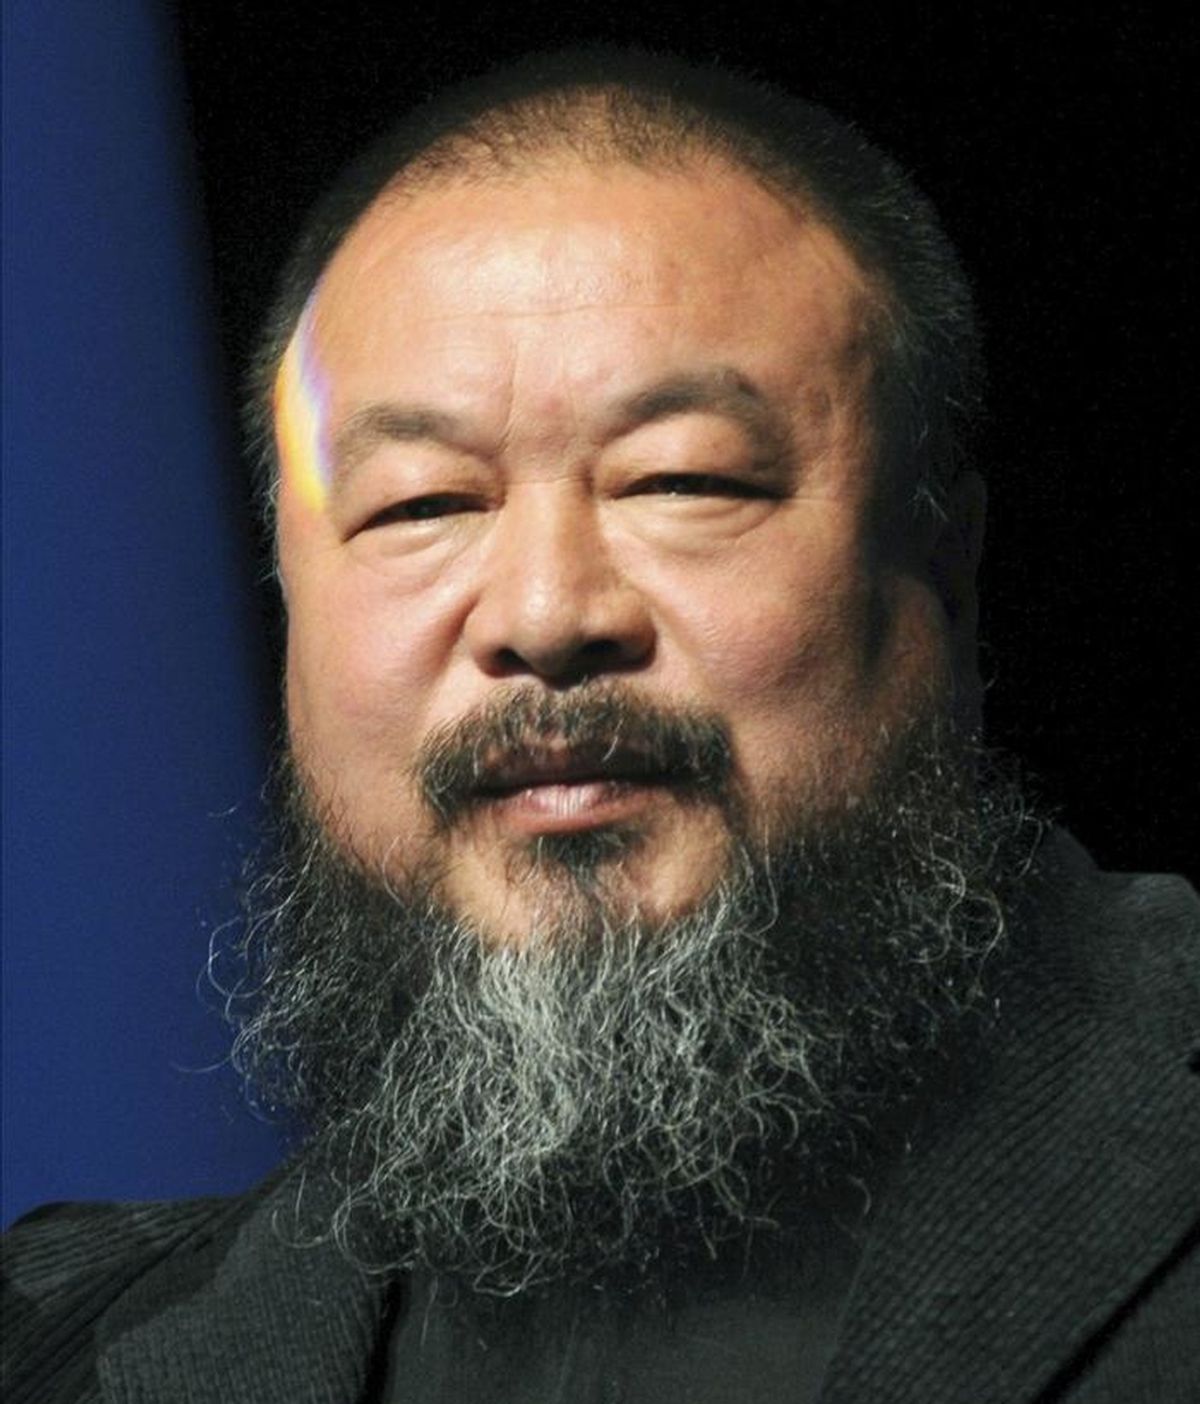 Fotografía de archivo del artista chino Ai Weiwei durante la ceremonia en la que fue distinguido con el premio "Das Glas der Vernunft" (cristal de la razón), en Kassel, Alemania, el 26 de septiembre de 2010. EFE